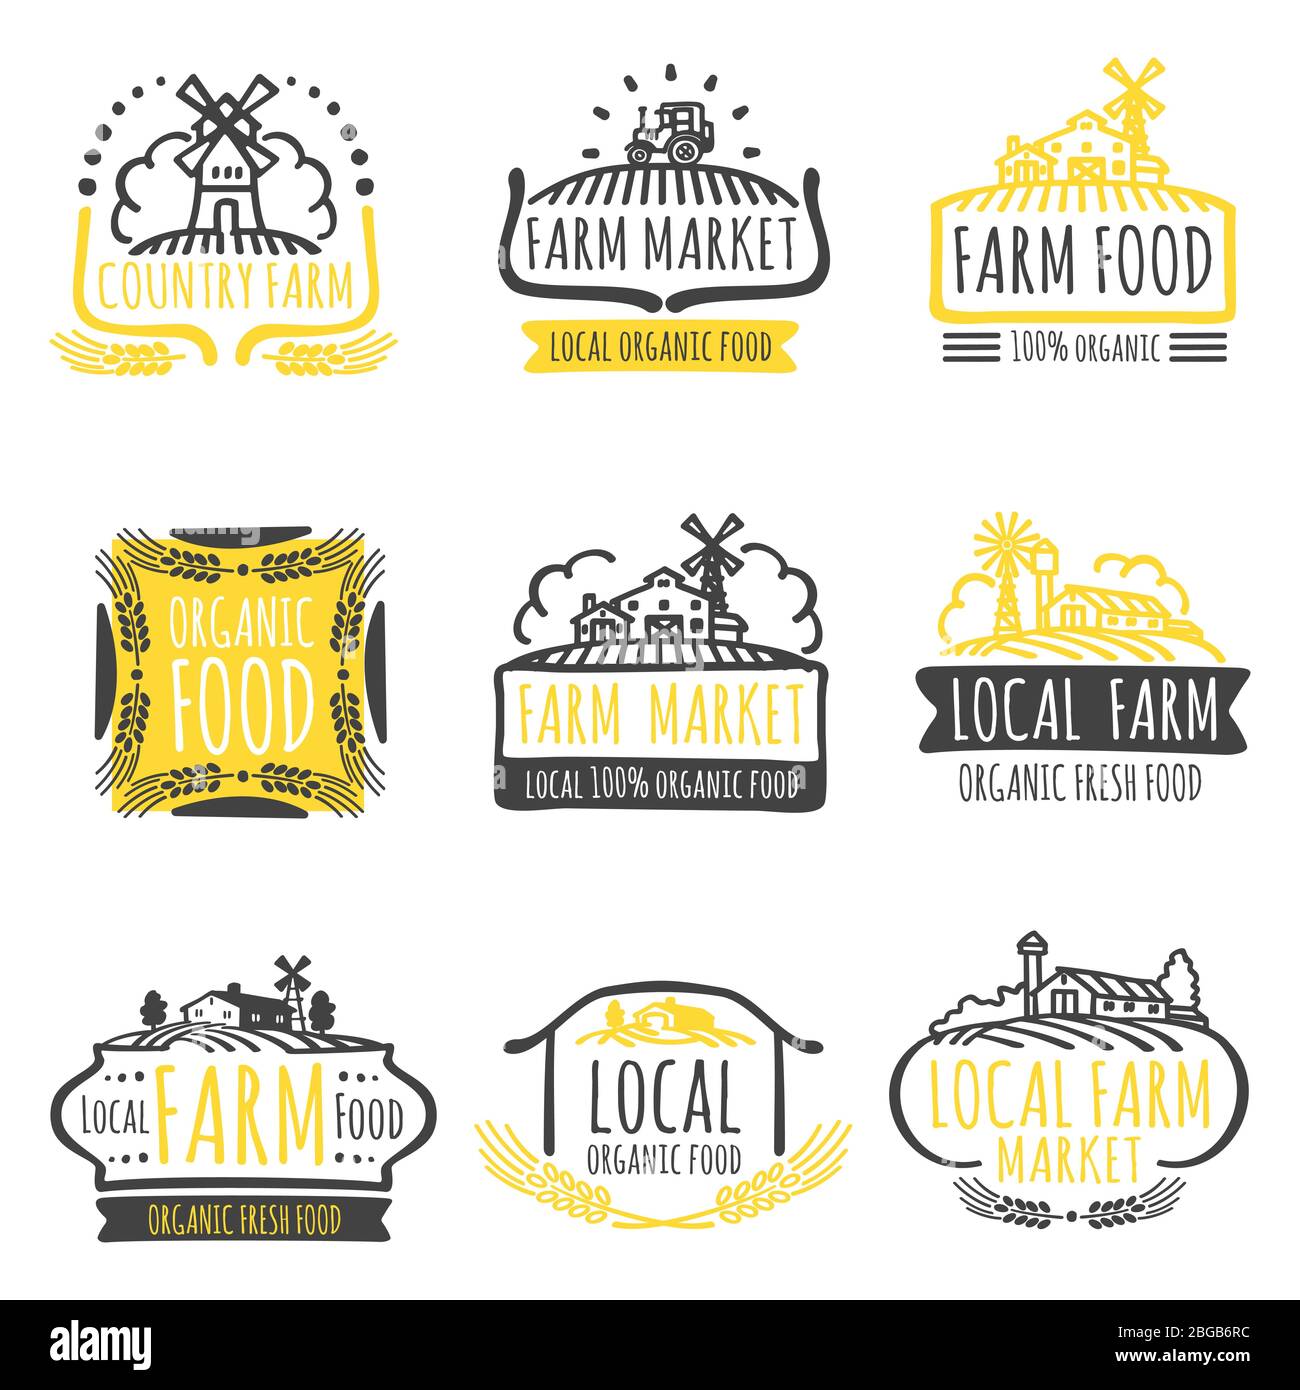 Gelb und grau Hand gezeichnet Bauernhof Markt Bio-Lebensmittel-Etiketten Set. Vektorgrafik Stock Vektor